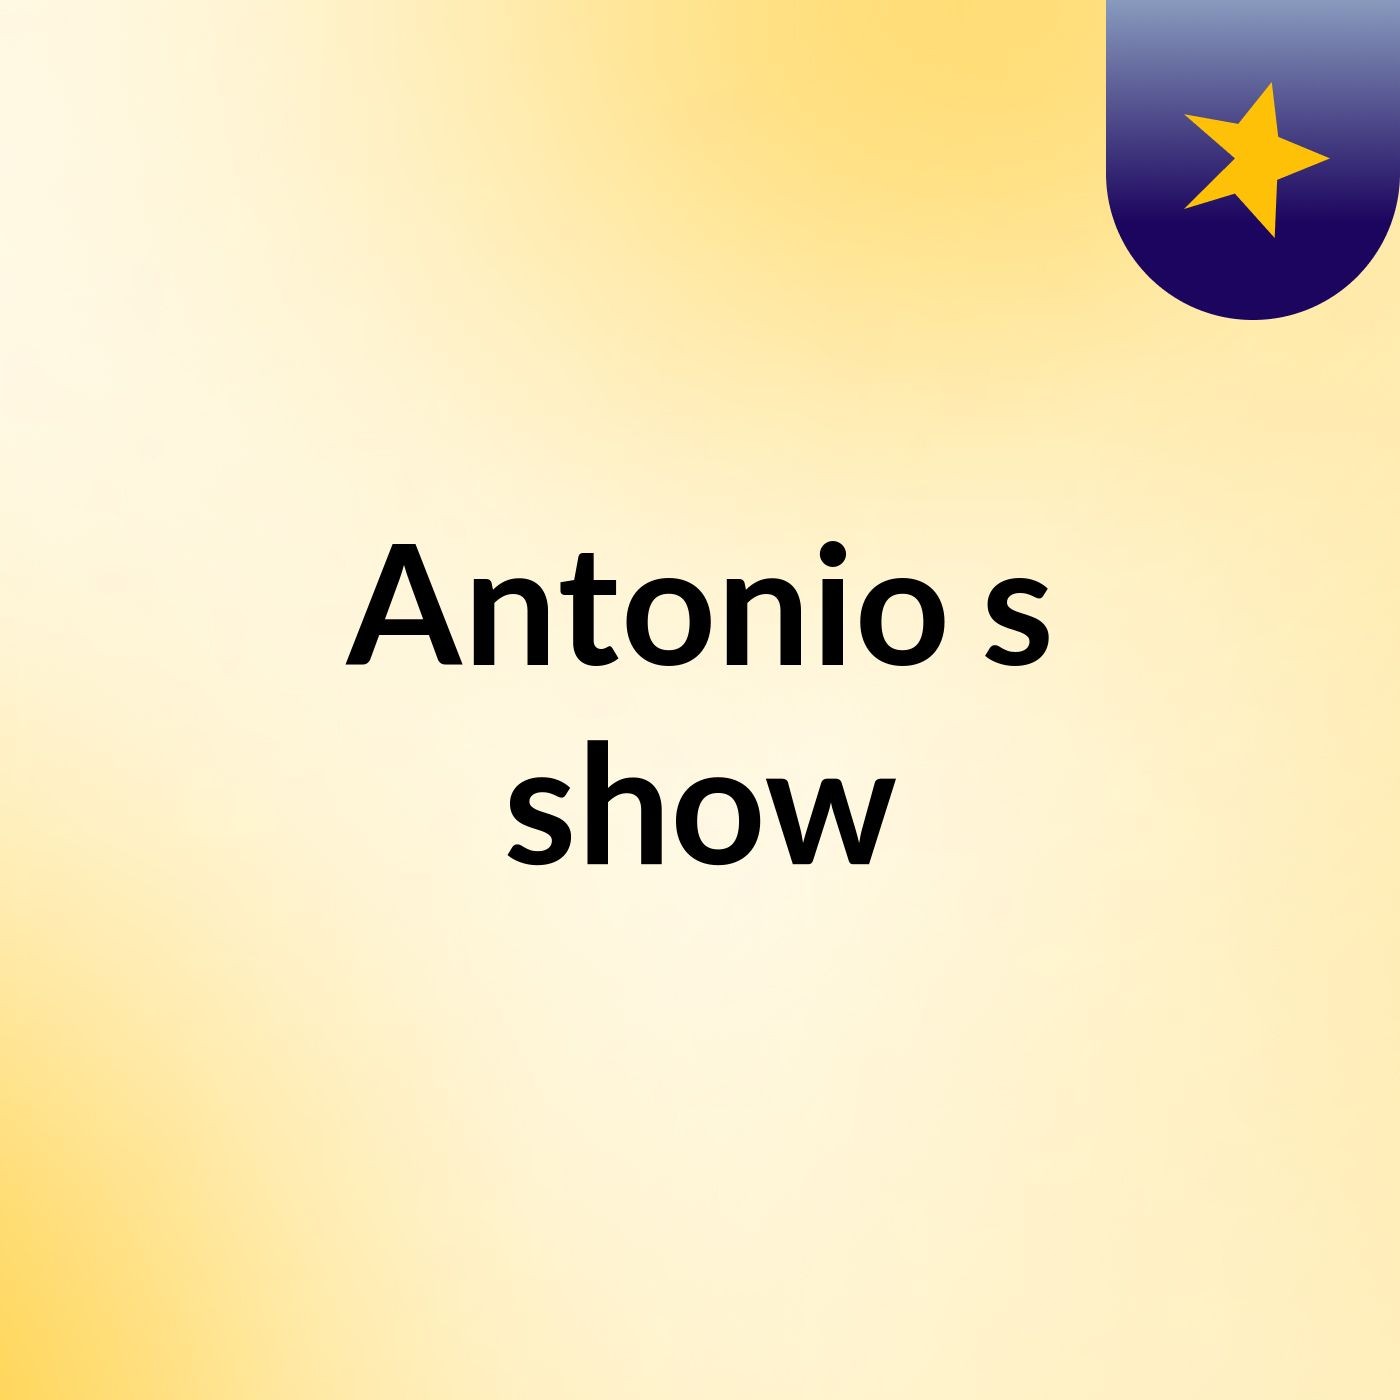 Antonio's show